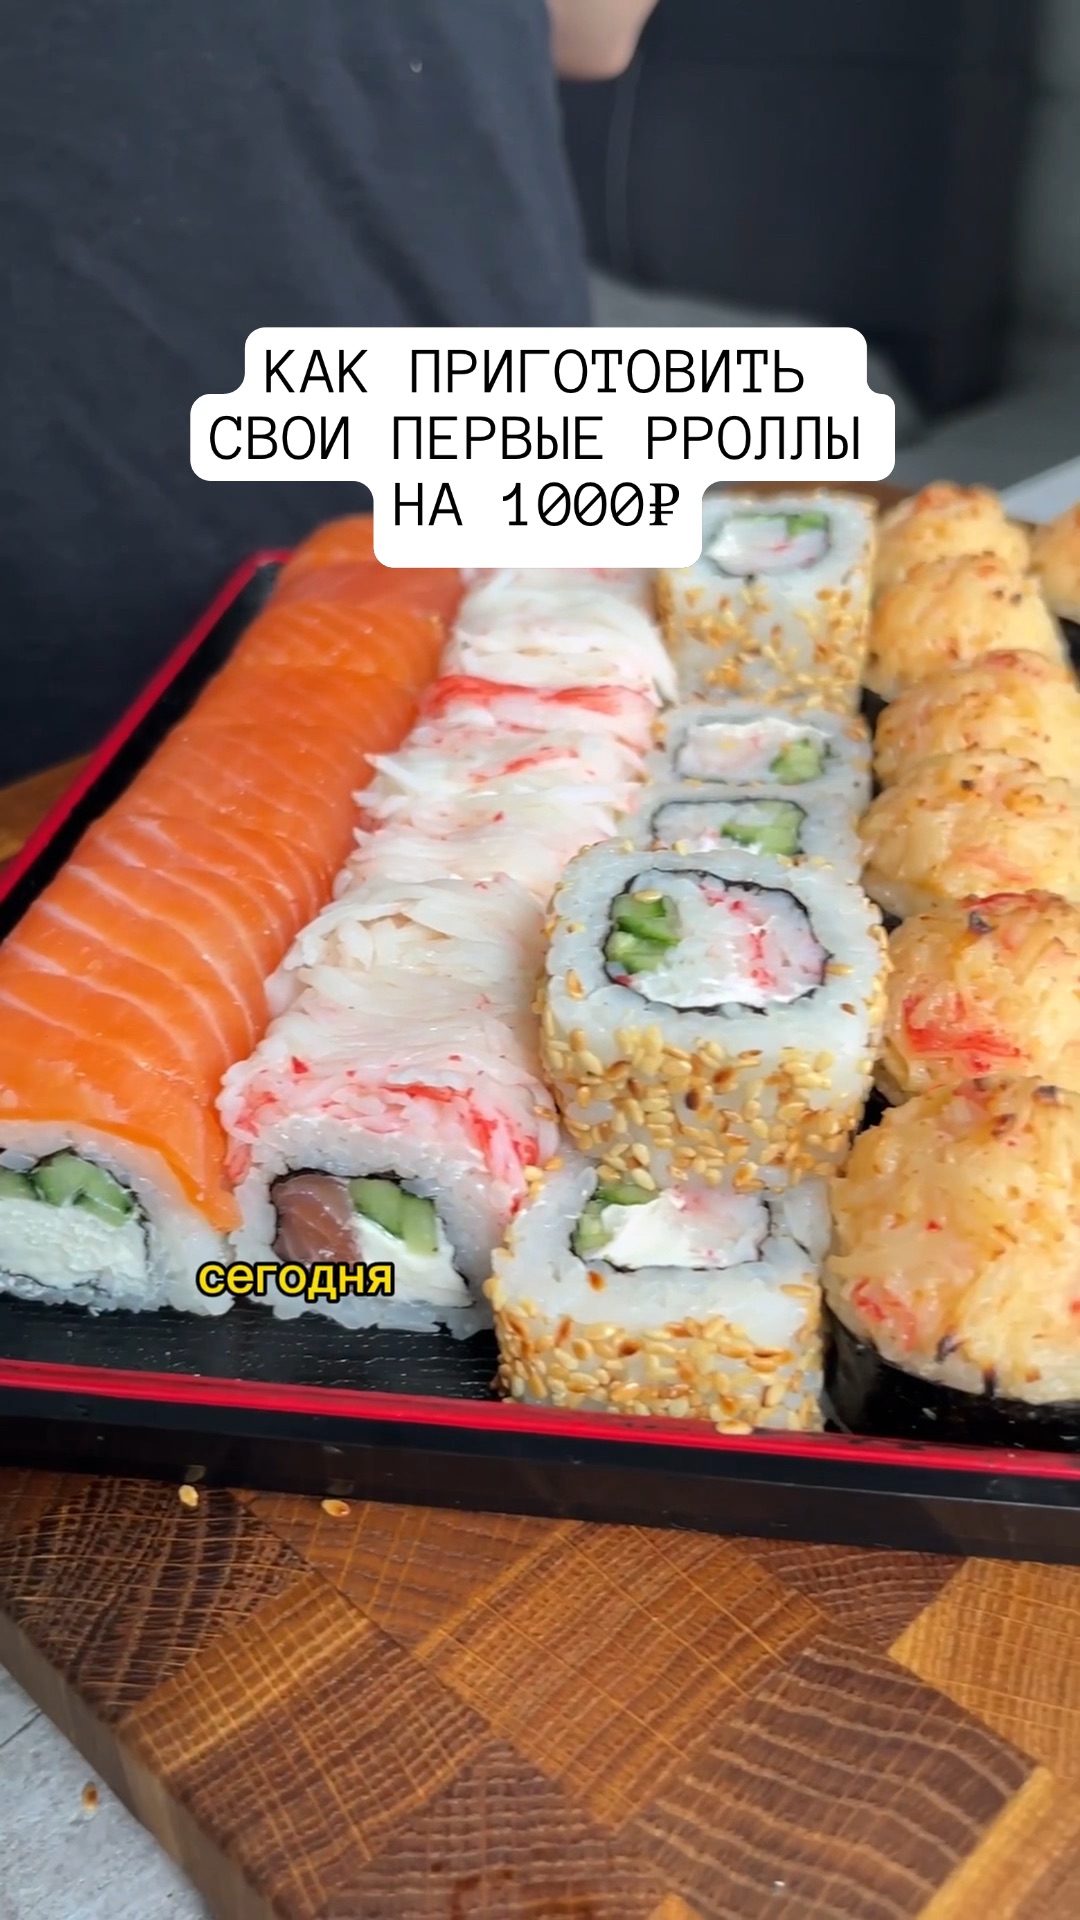 Рецепт суши и роллов запеченных фото 20